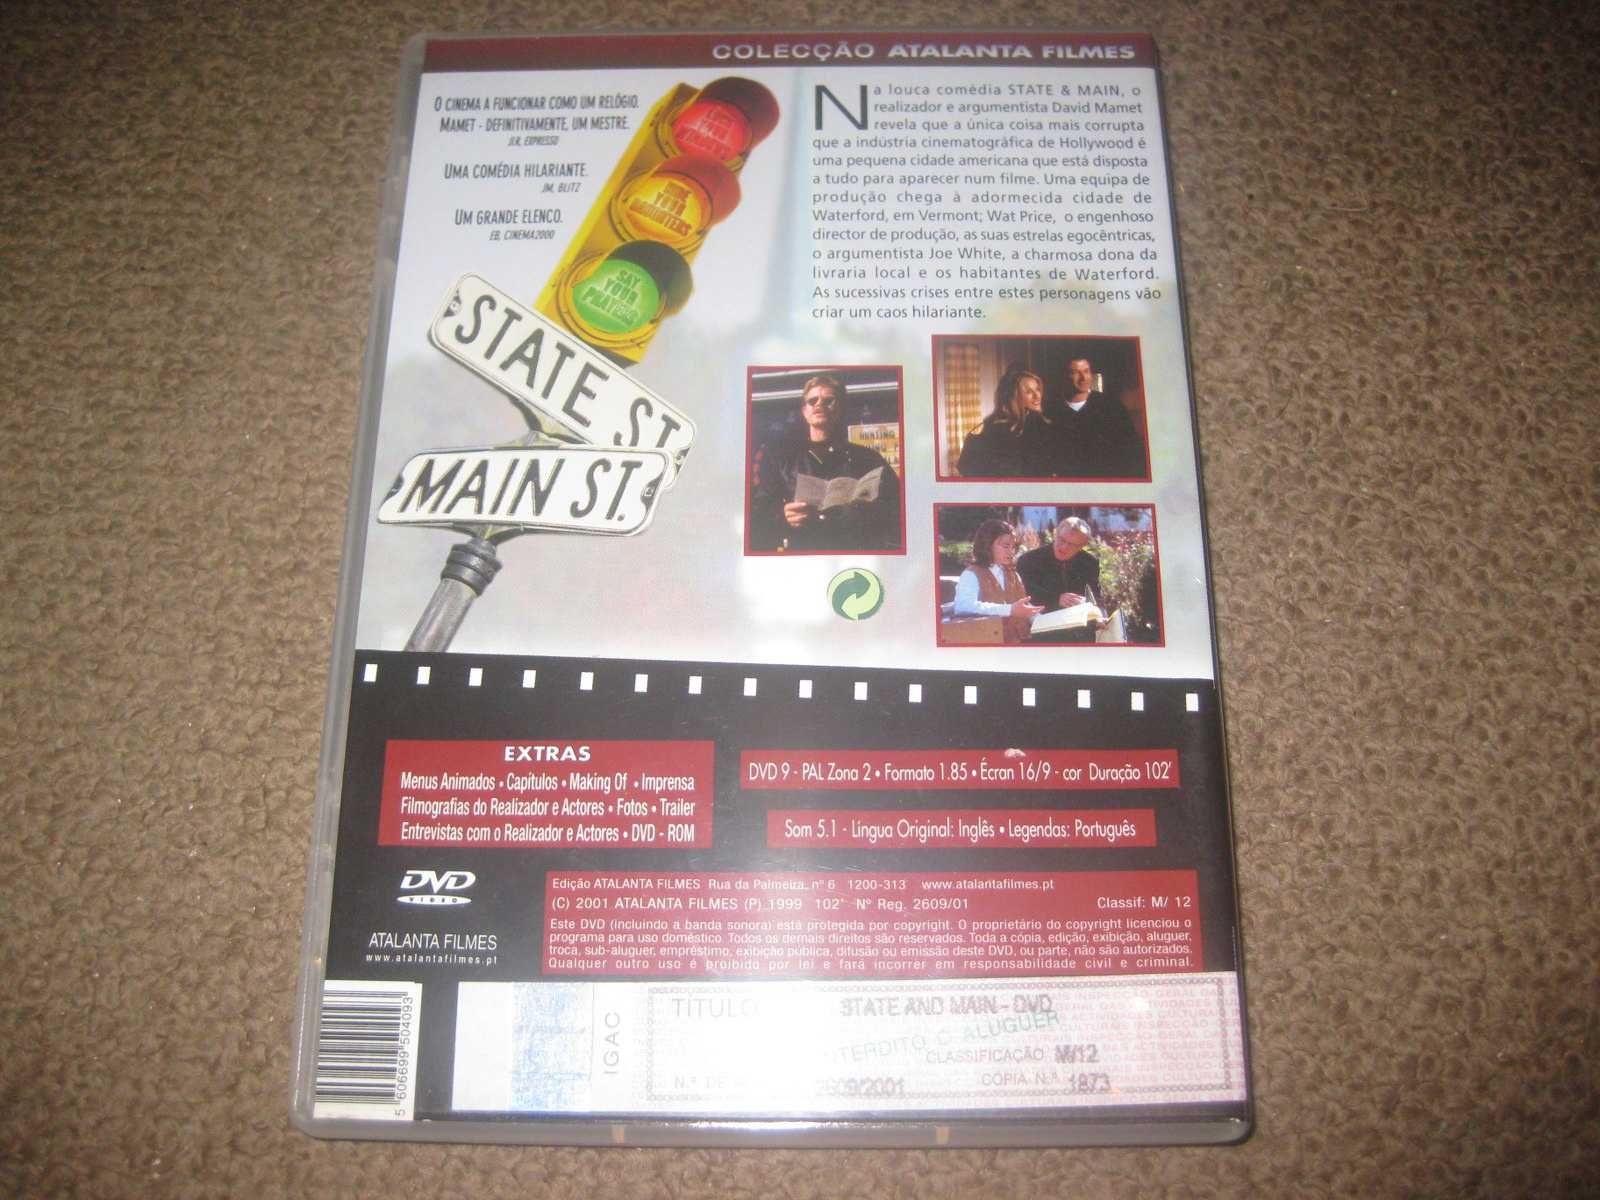 DVD "State and Main" com Sarah Jessica Parker